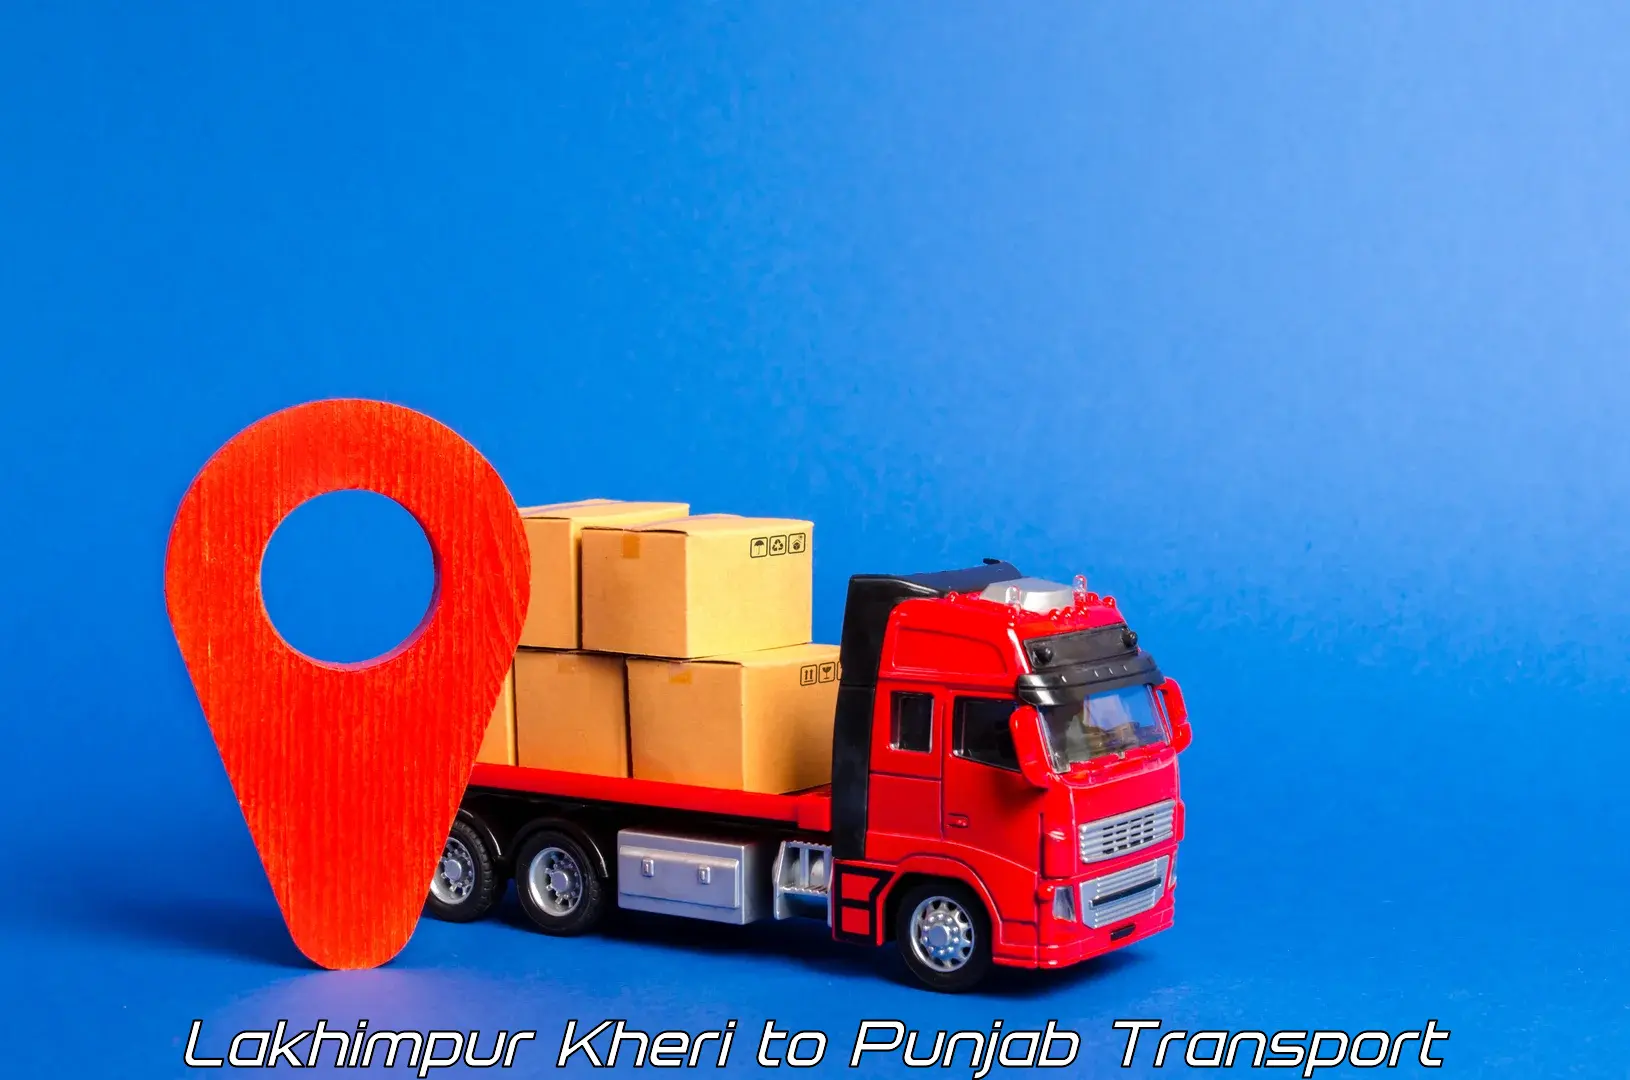 Nationwide transport services Lakhimpur Kheri to Mandi Gobindgarh